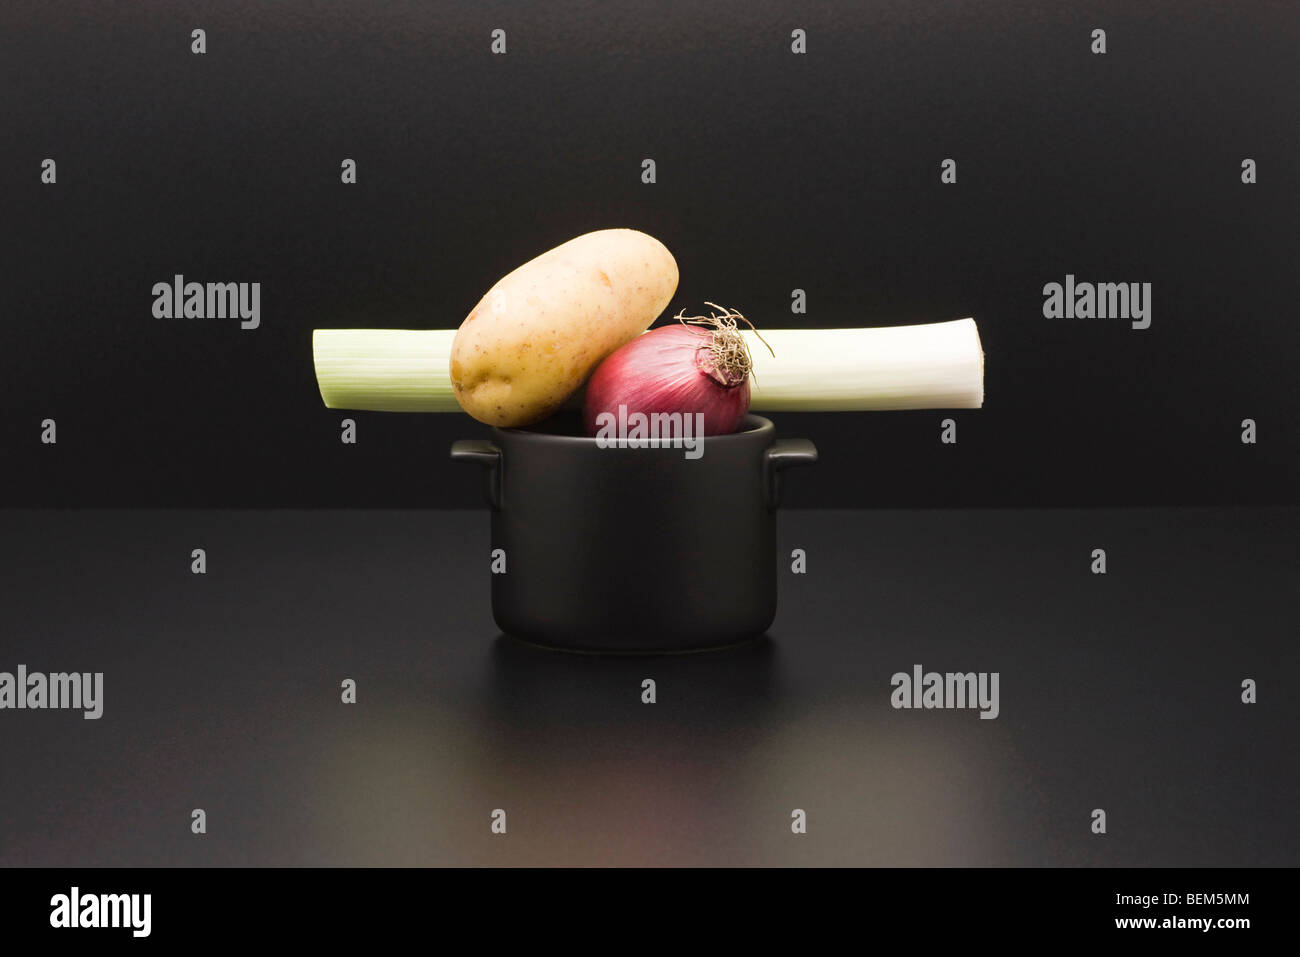 Concept de l'alimentation, des légumes frais sur le dessus du pot miniature Banque D'Images